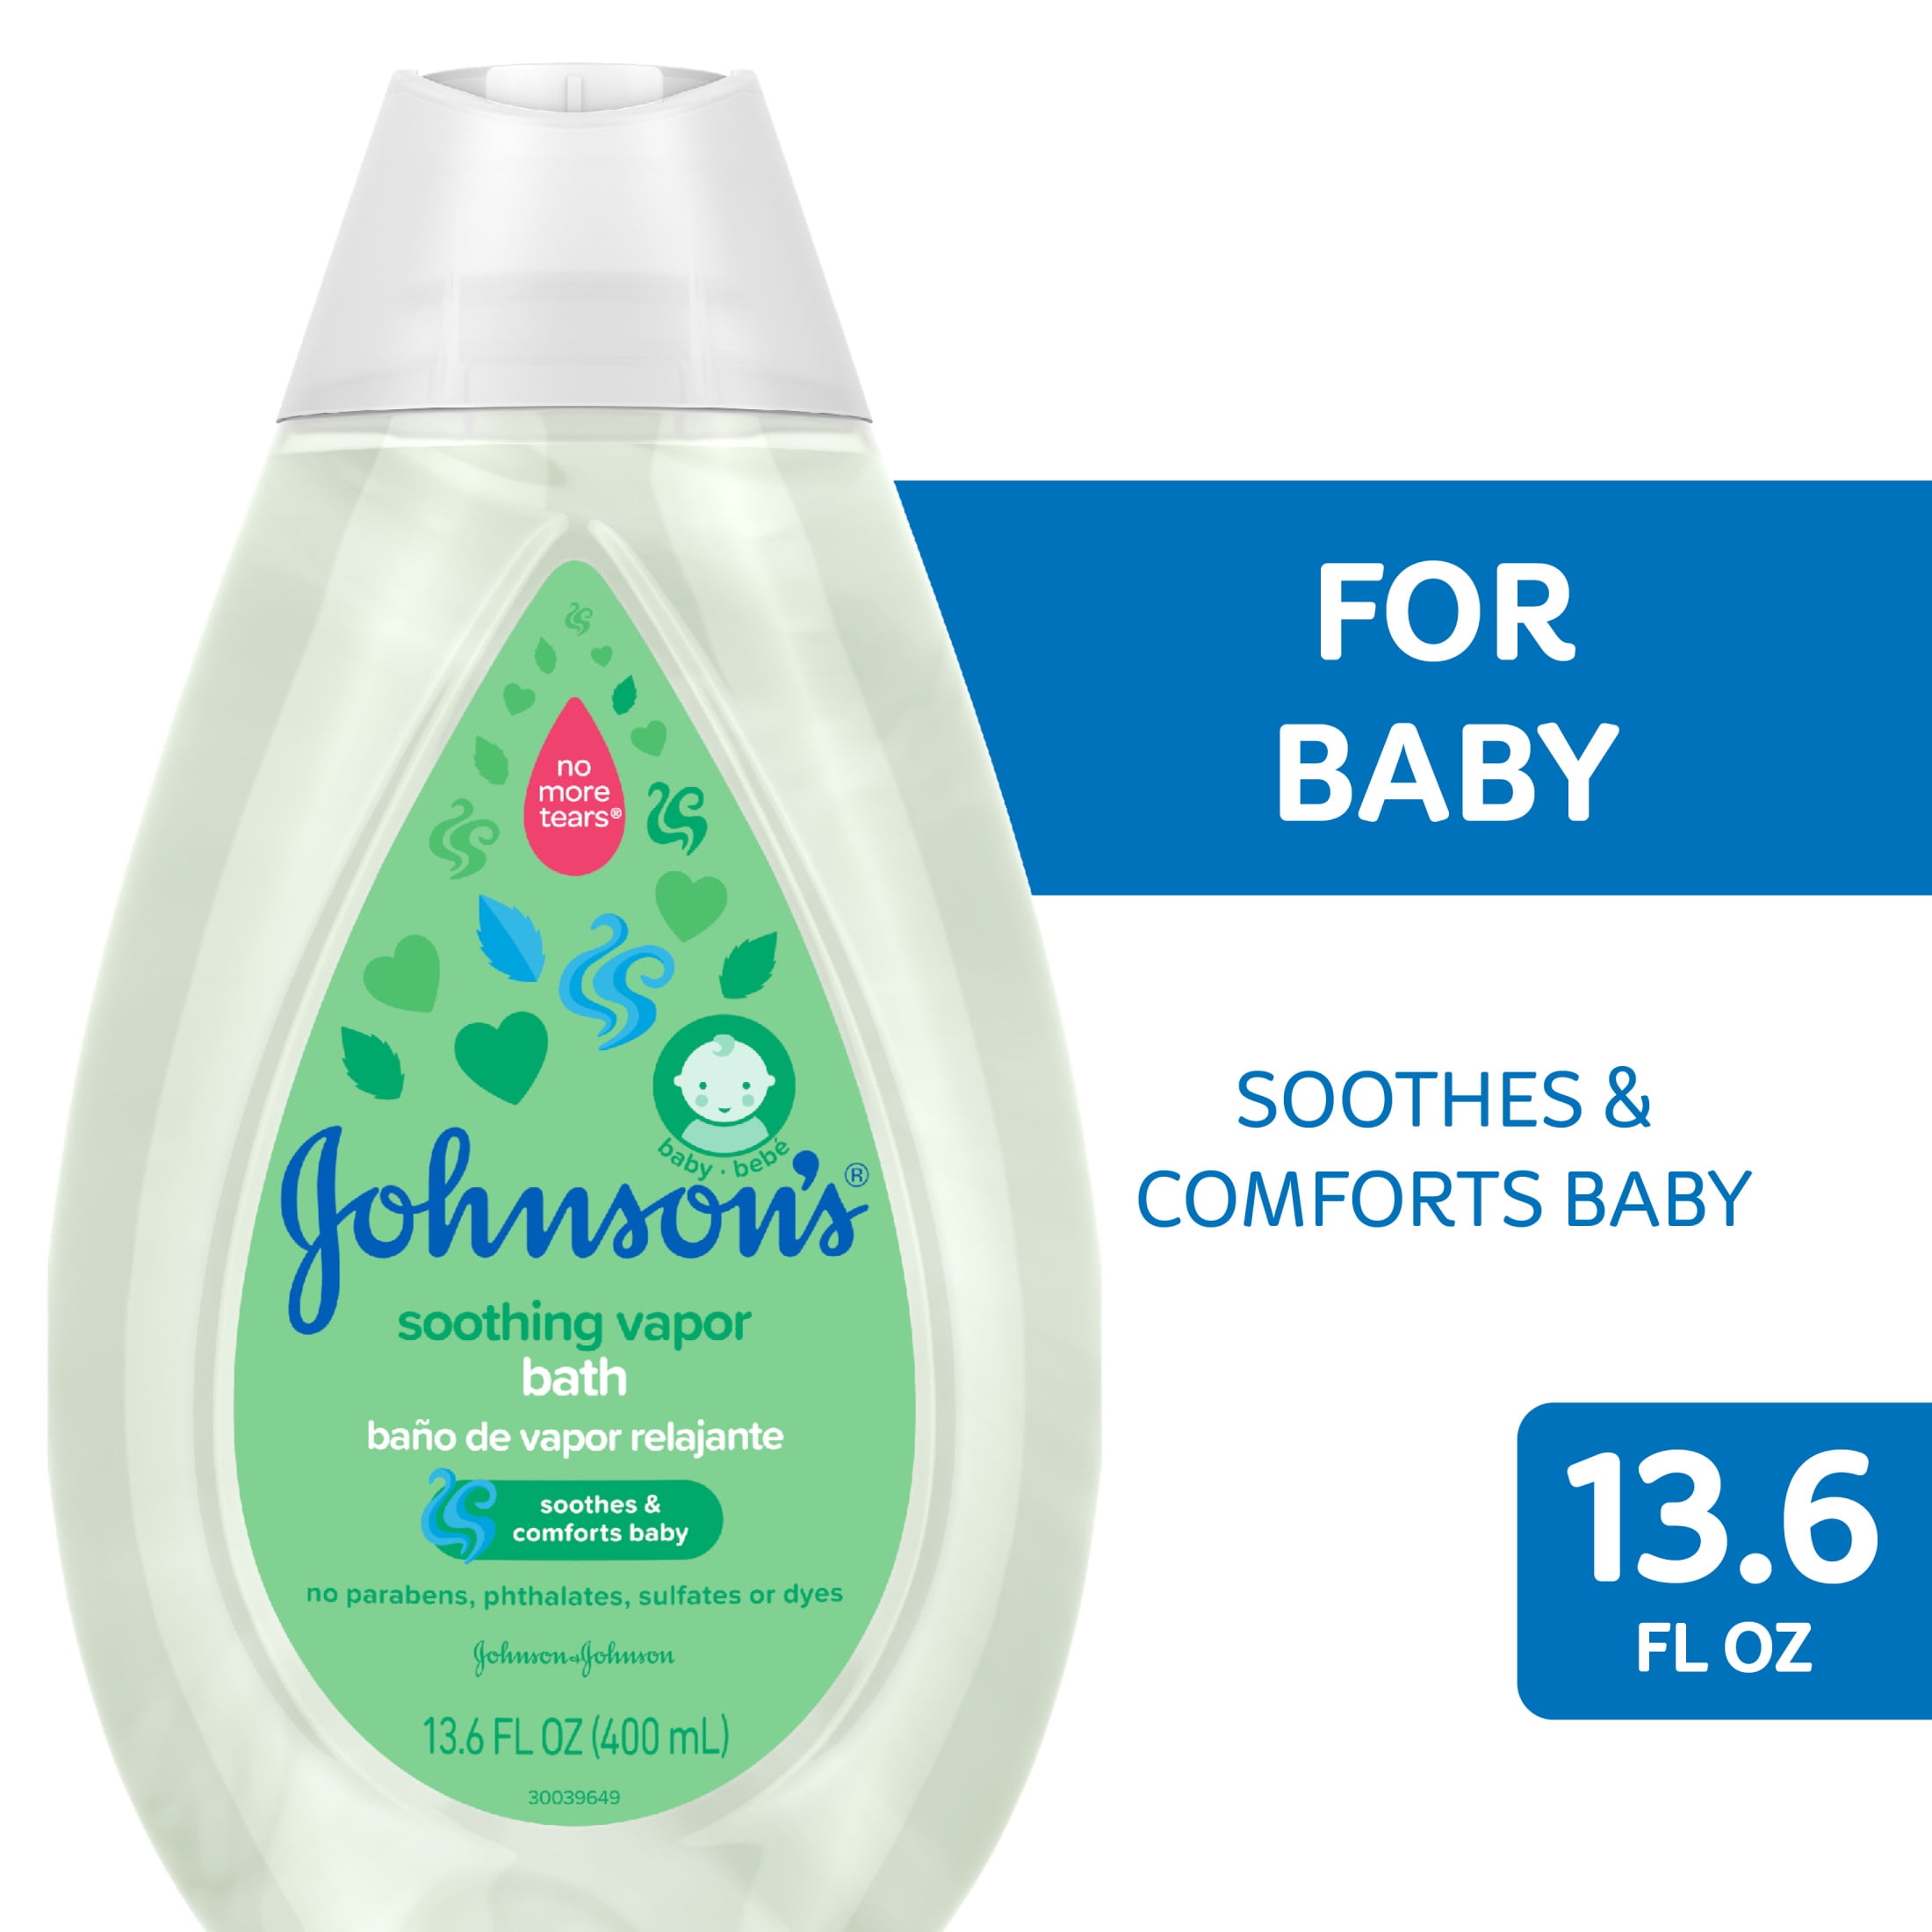 Johnsons Kids Bubble Bath & Wash - 500ml - اندروميدا